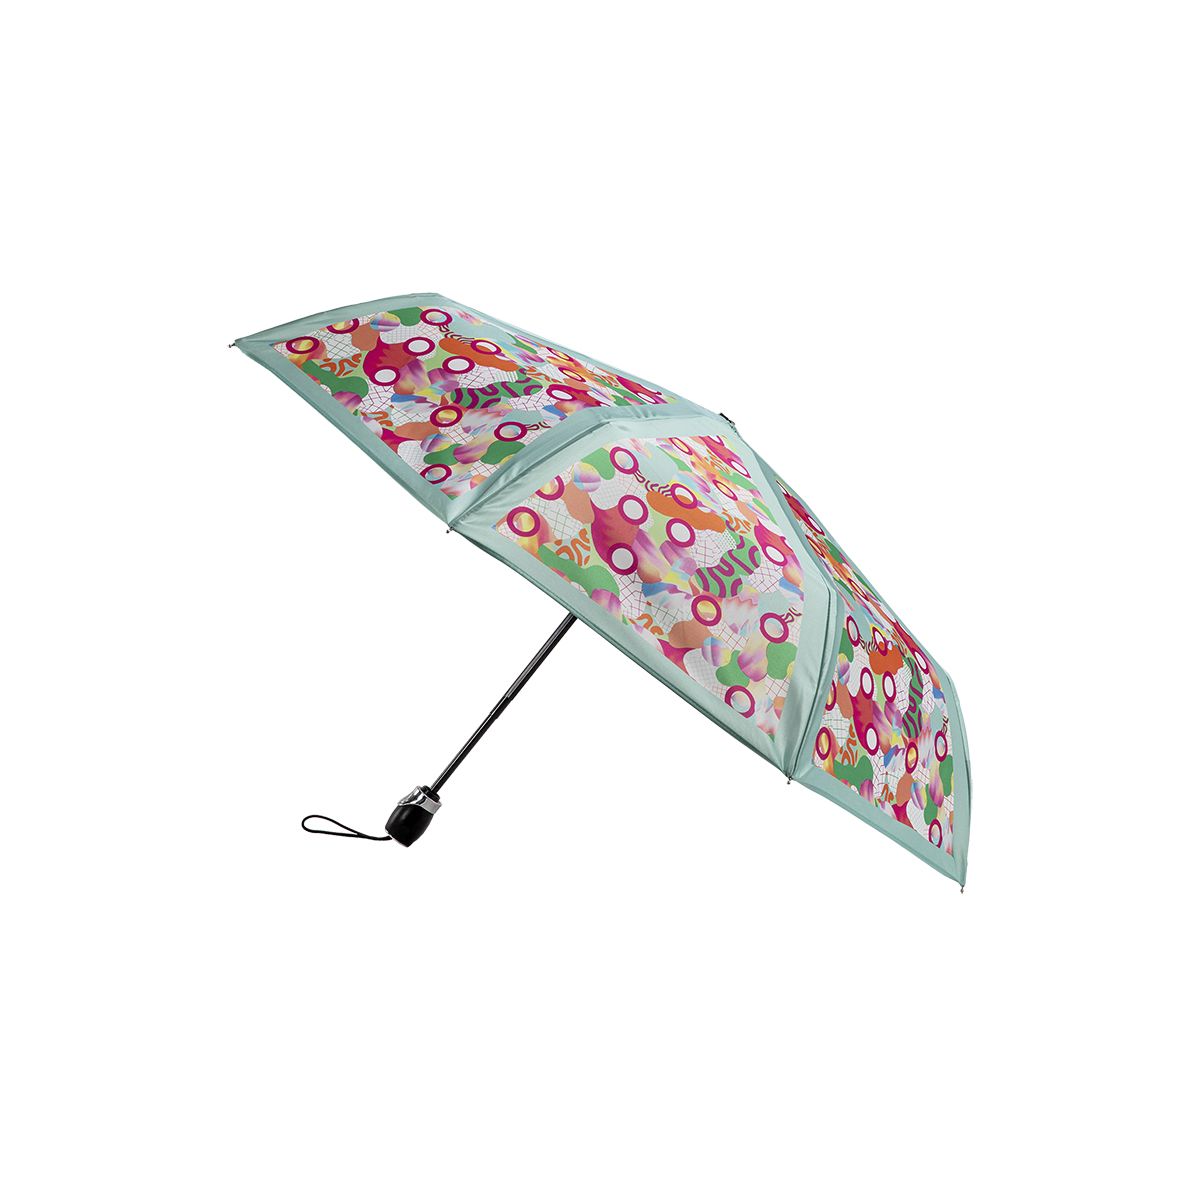 Mini-parapluie pliant Piganiol prince de galles